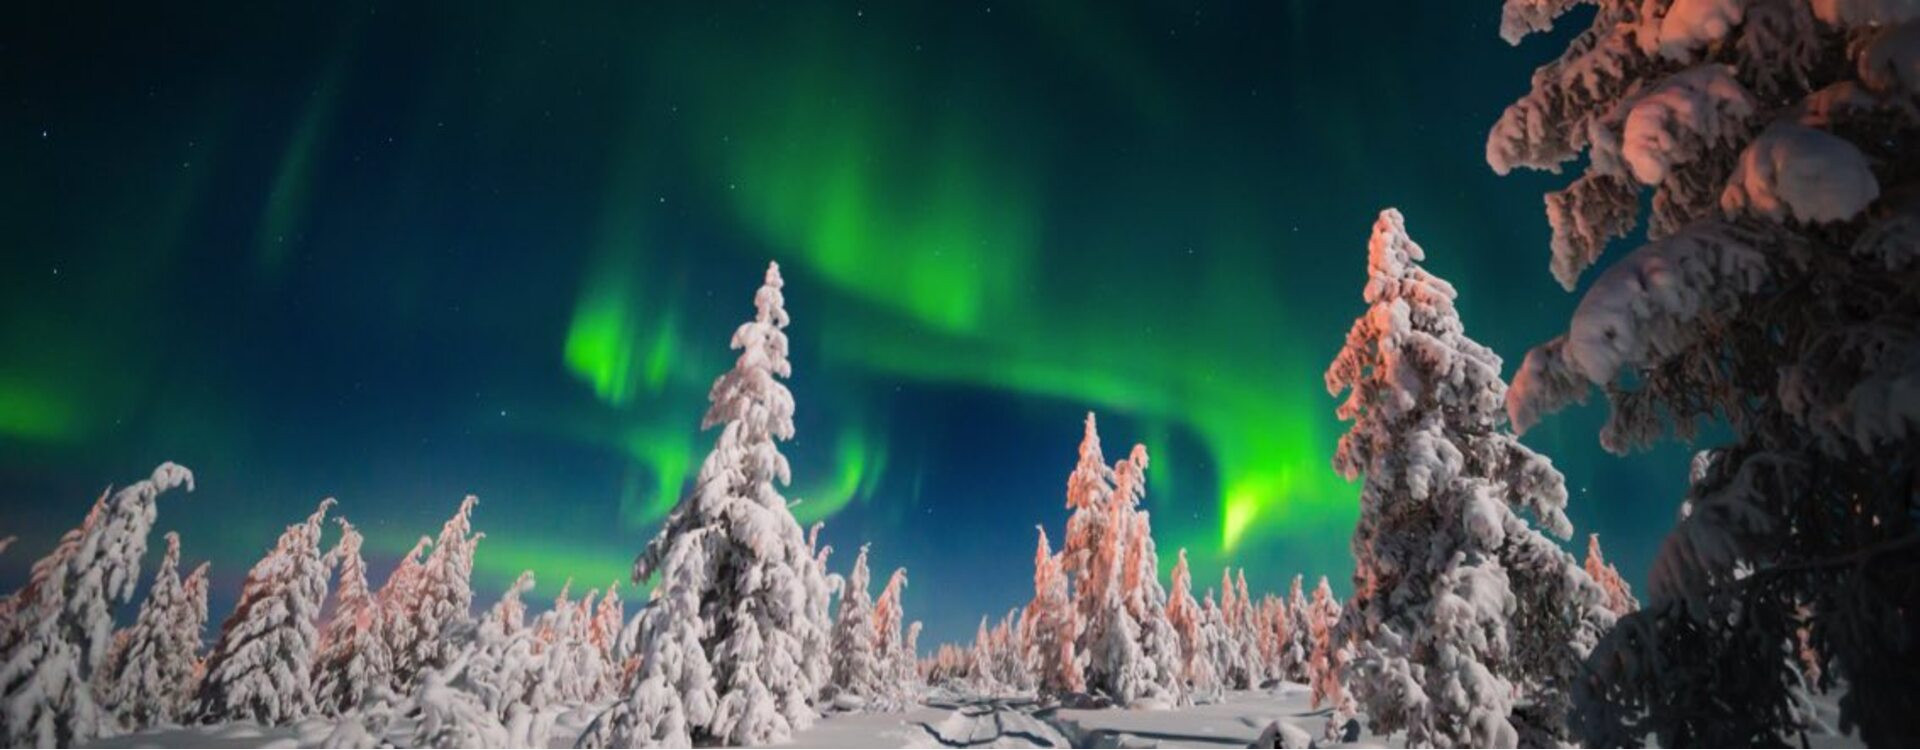 Cuándo y dónde se puede ver la aurora boreal